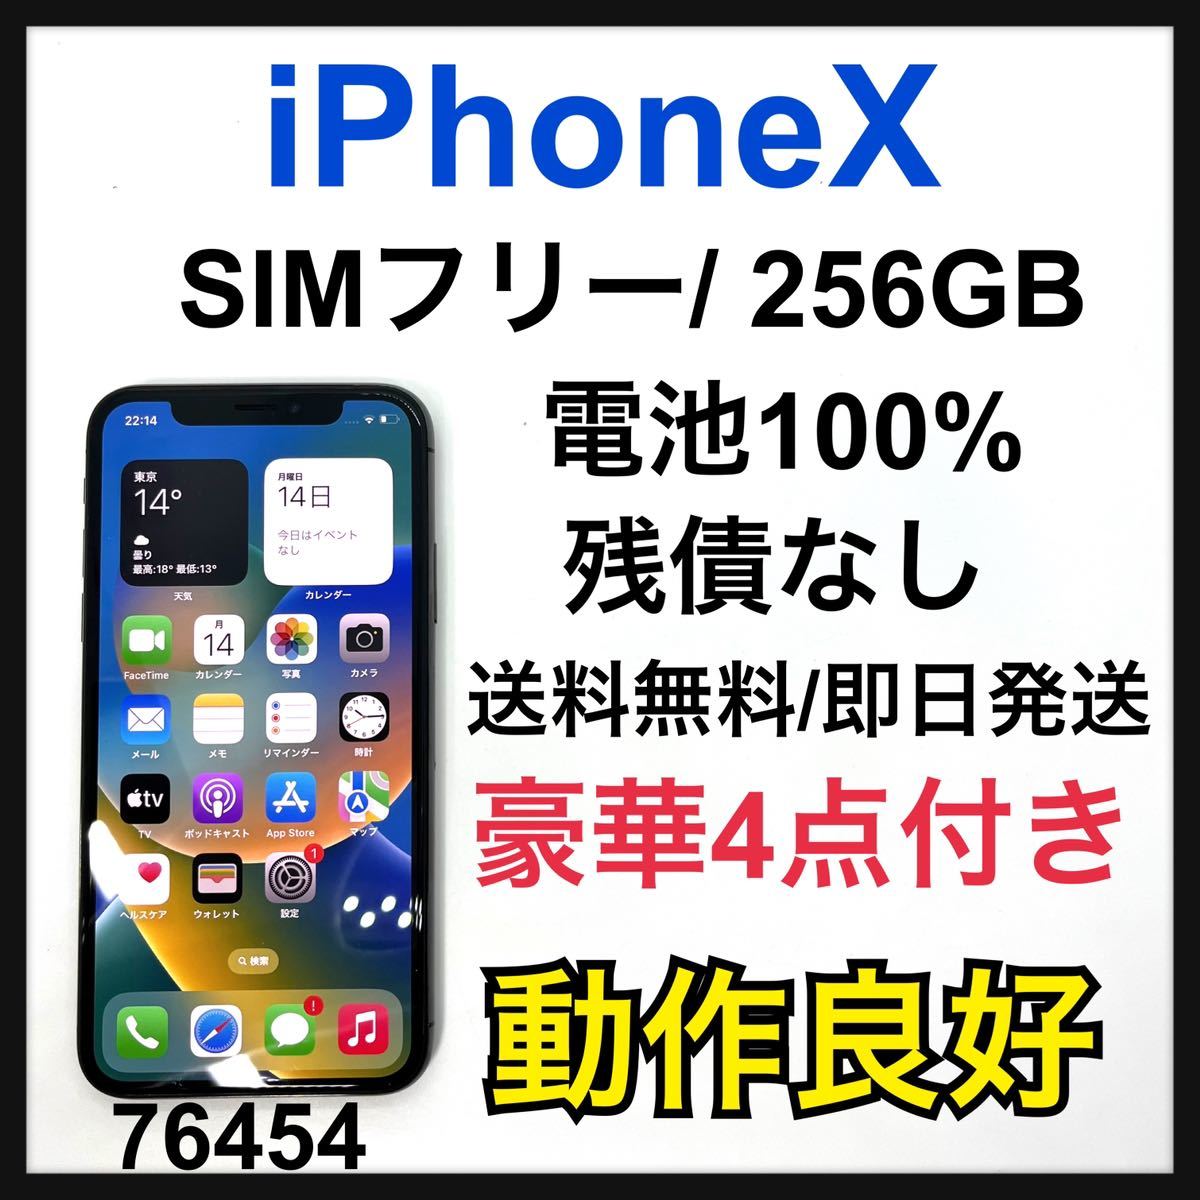 S 100% iPhone X Silver 256 GB SIMフリー 本体-